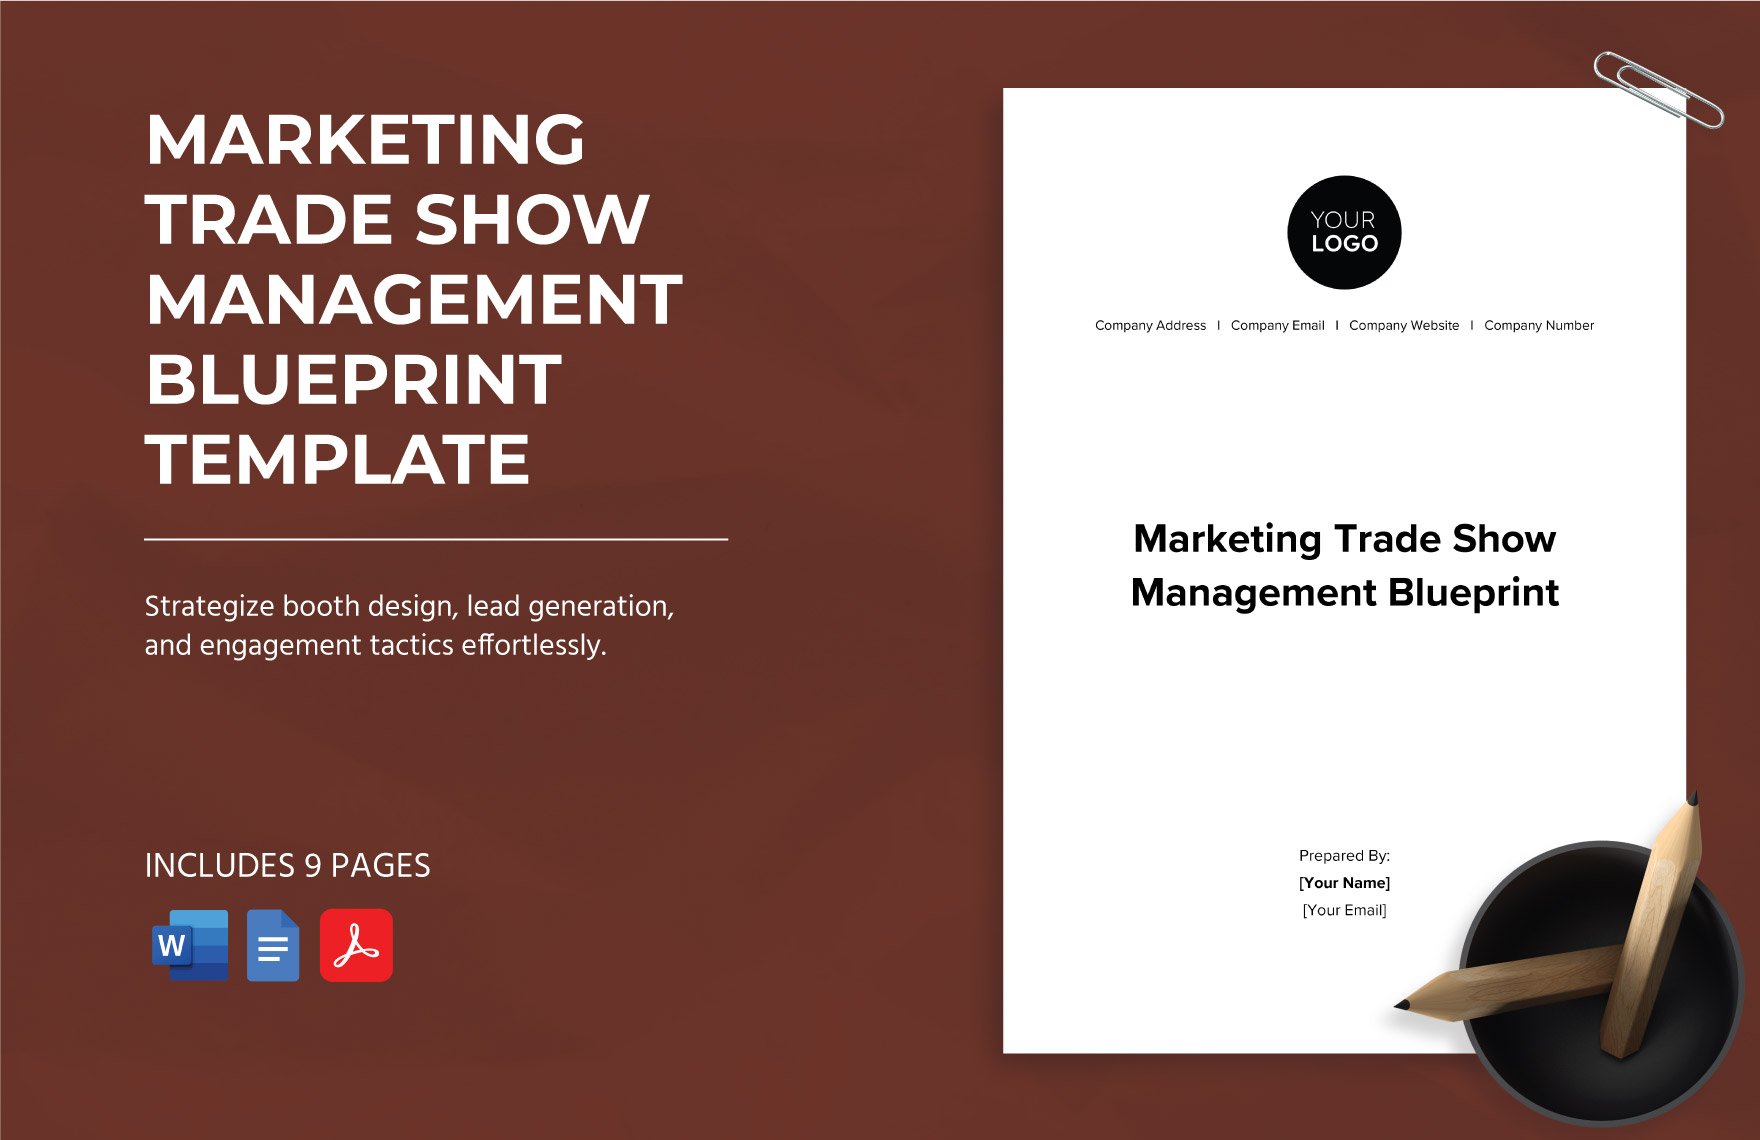 Marketing Trade Show Management Blueprint Template